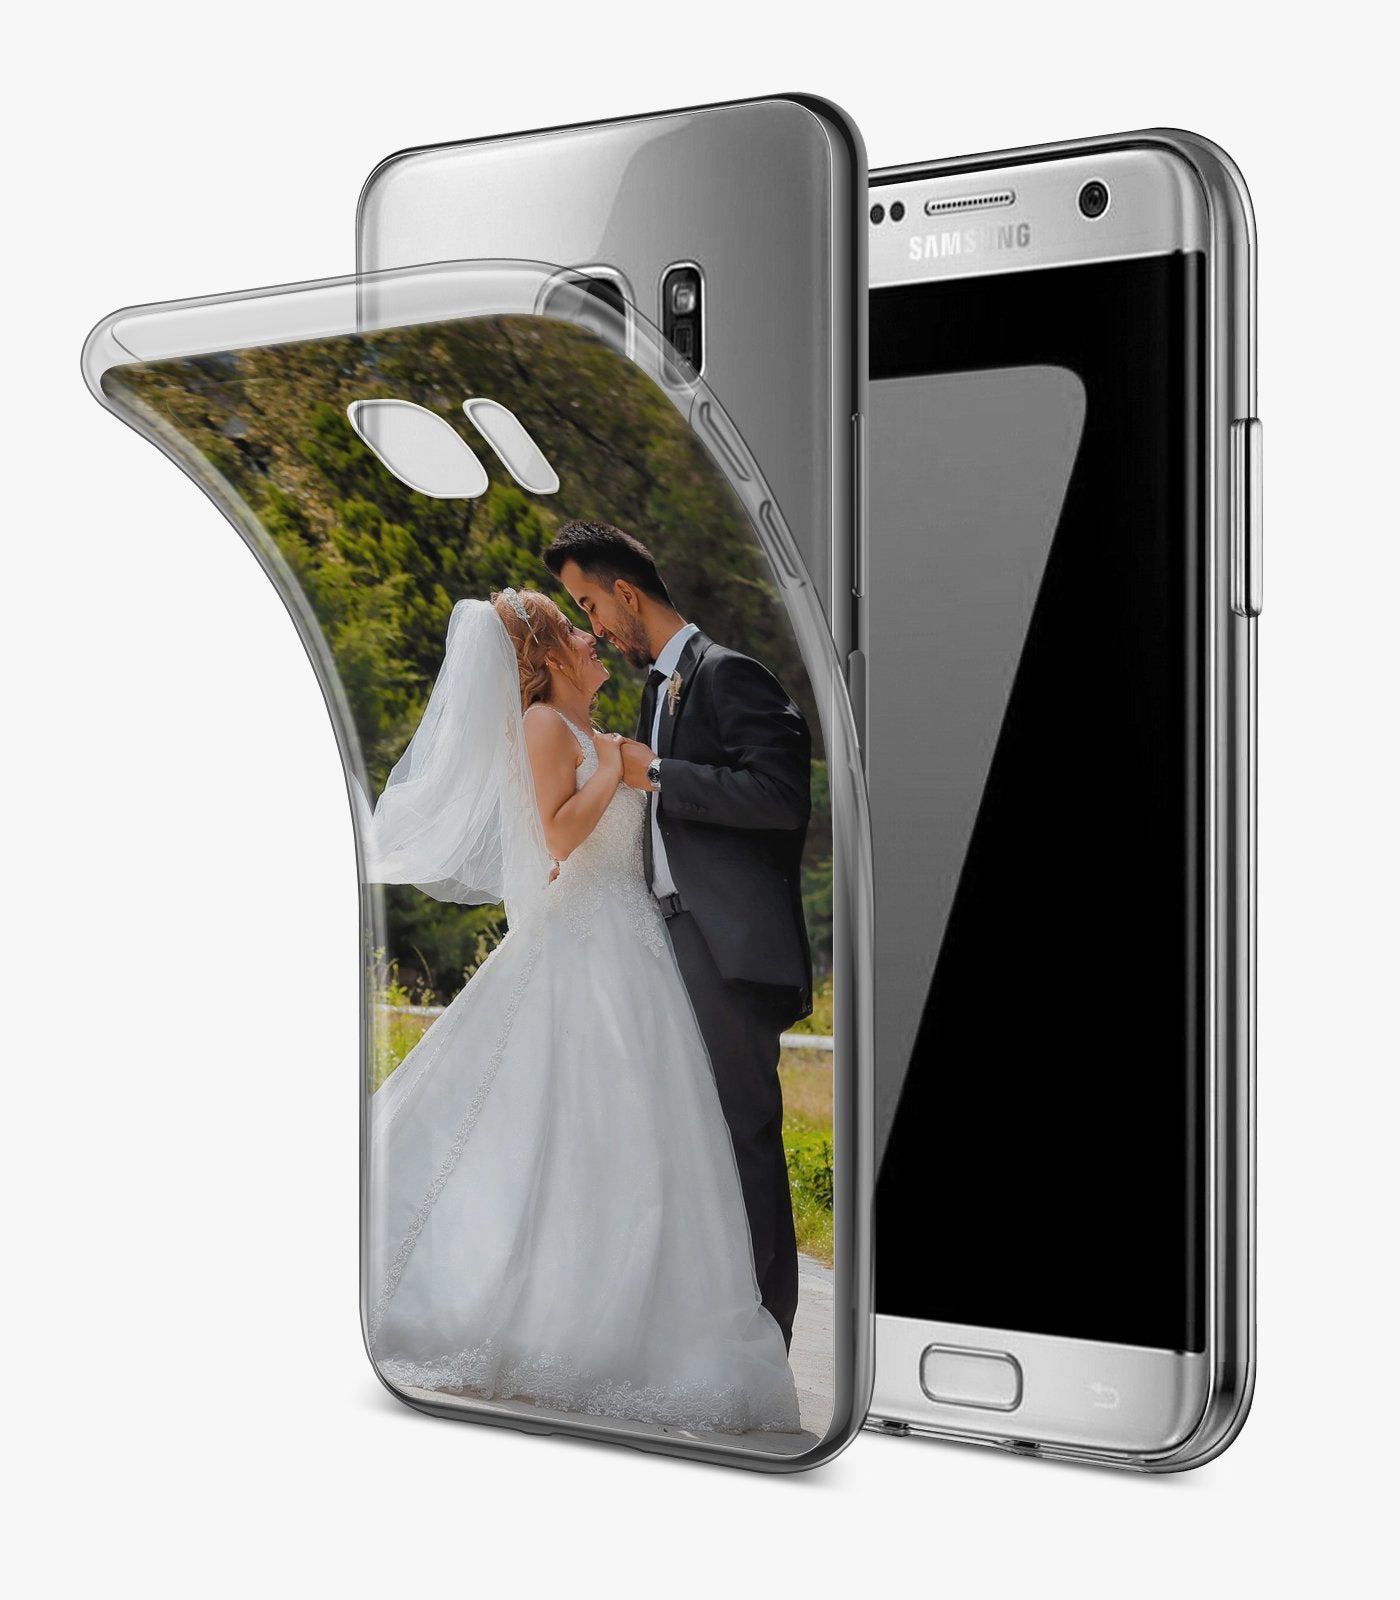 Samsung Galaxy S7 Hülle personalisiert